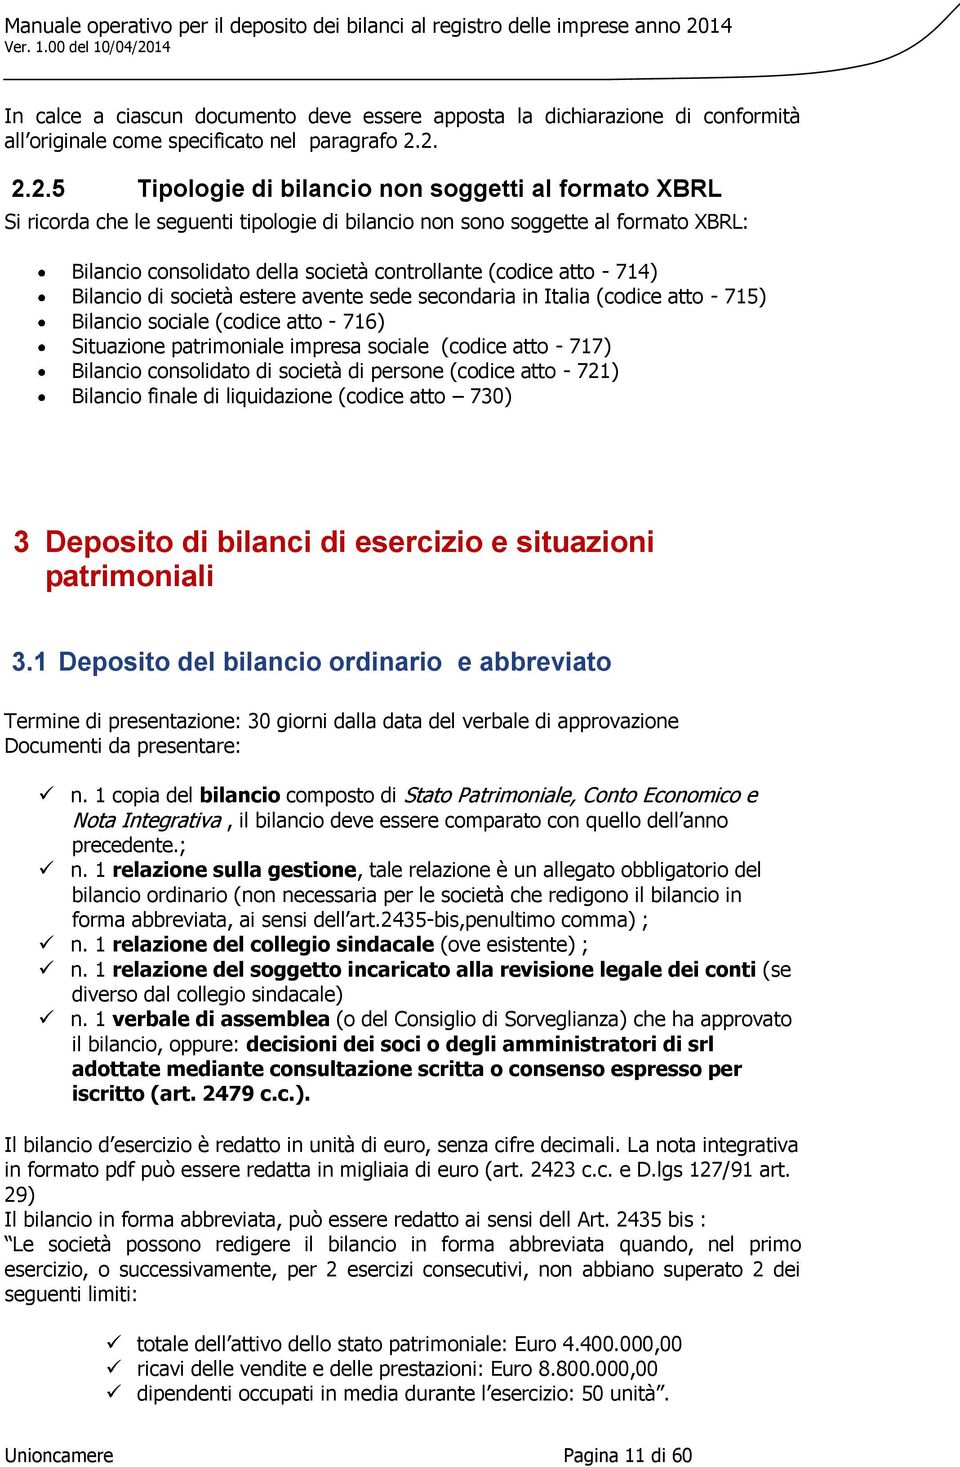 atto - 714) Bilancio di società estere avente sede secondaria in Italia (codice atto - 715) Bilancio sociale (codice atto - 716) Situazione patrimoniale impresa sociale (codice atto - 717) Bilancio